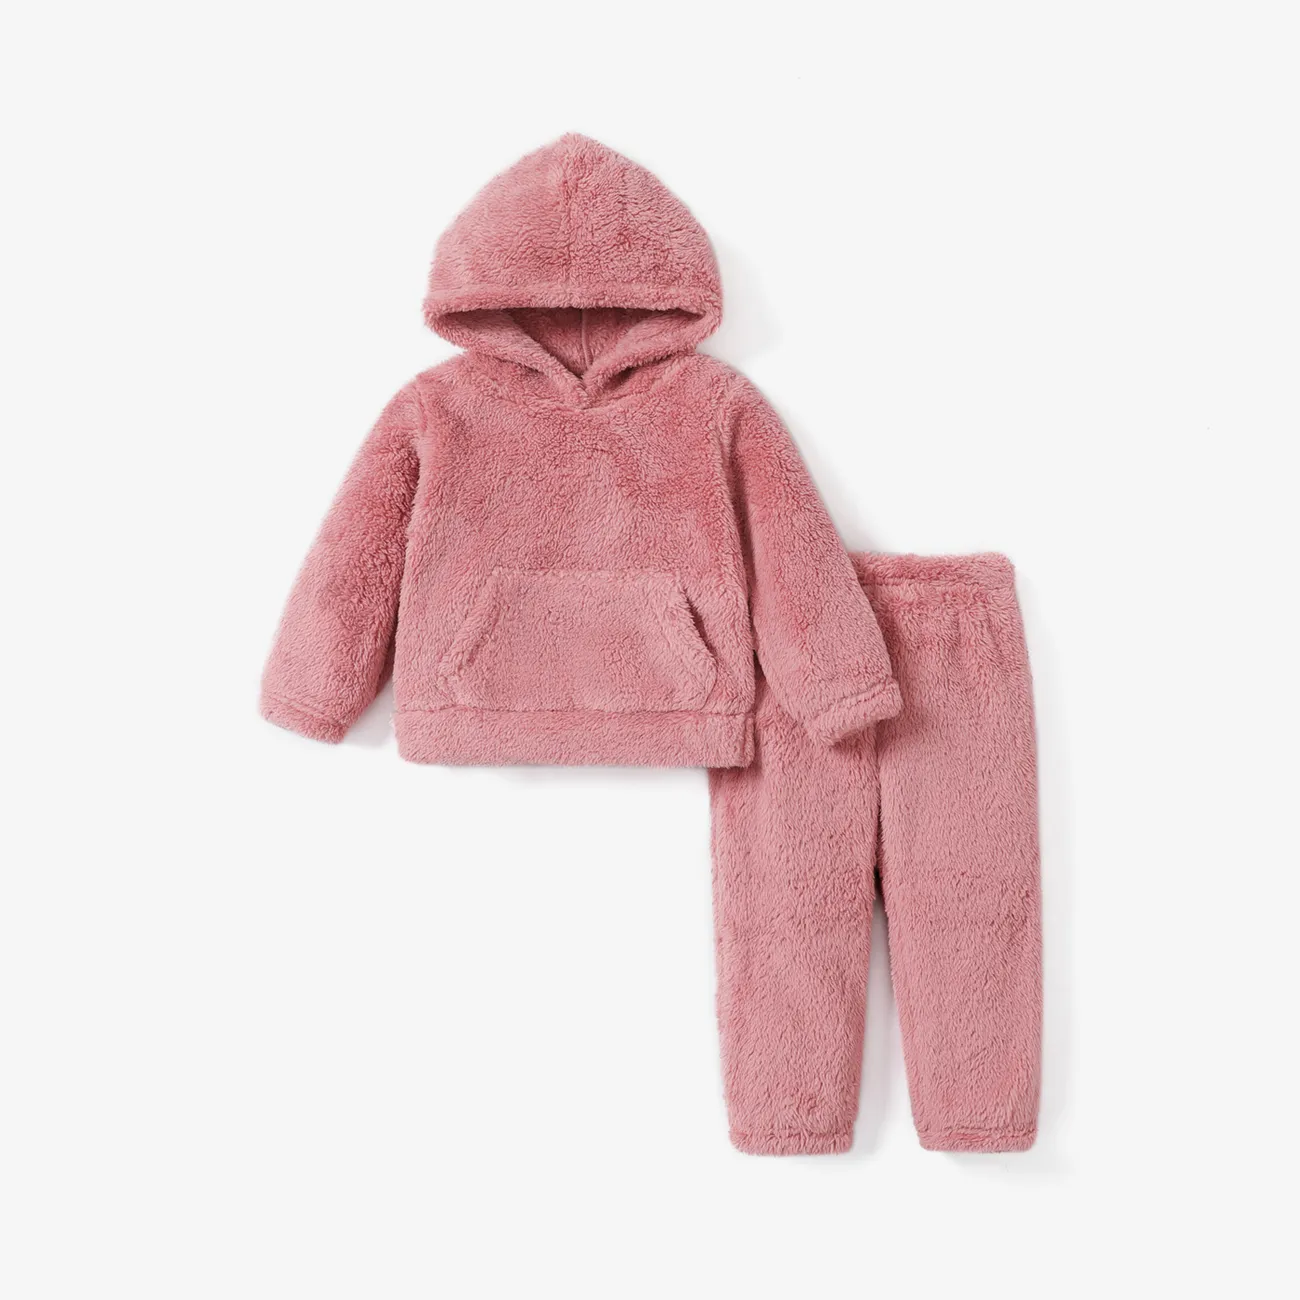 2-piece Toddler Girl Fuzzy Hoodie Sweatshirt and Pants Set  big image 1